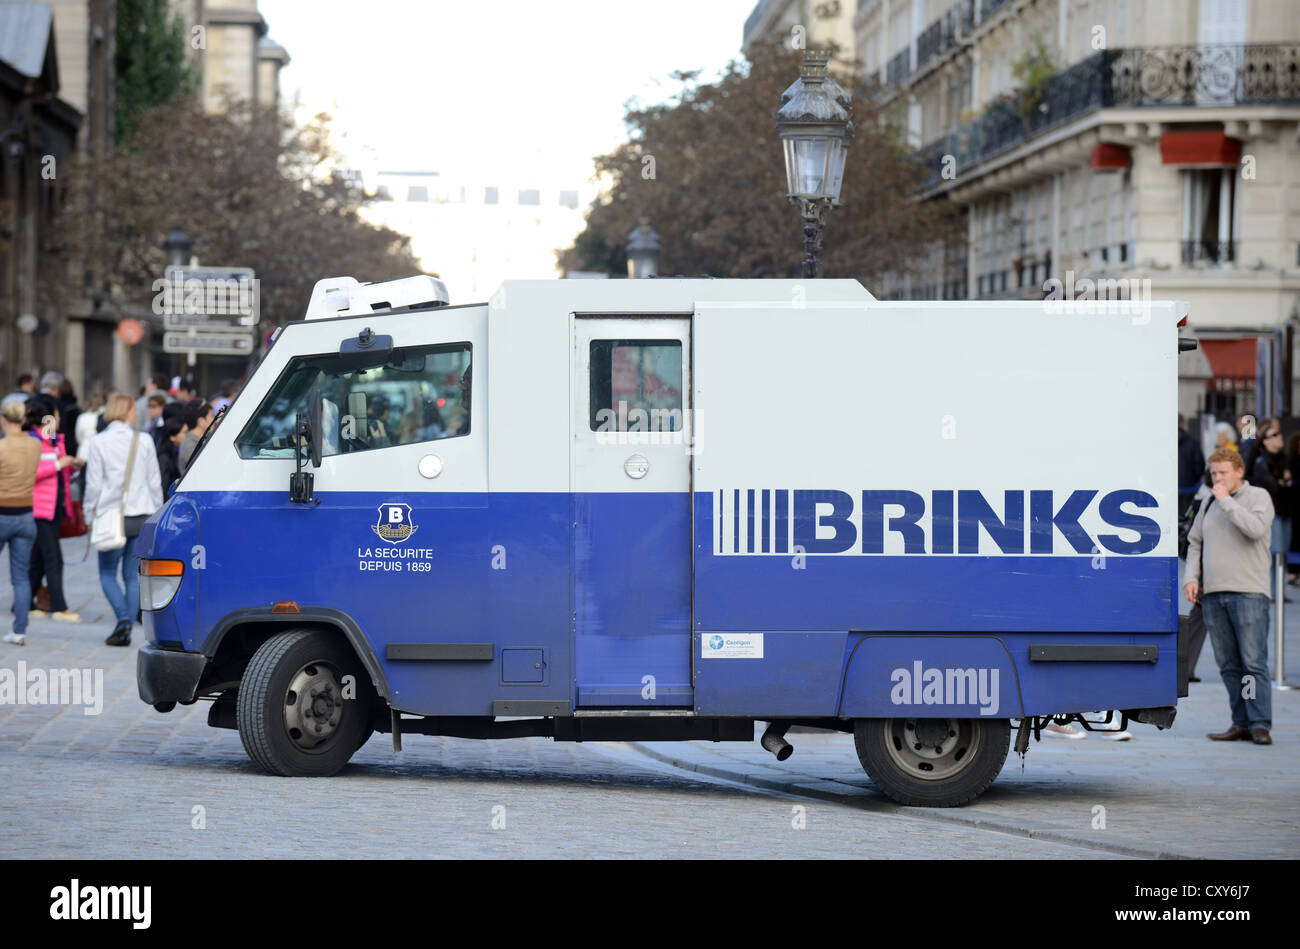 Brinks security van, France Banque D'Images